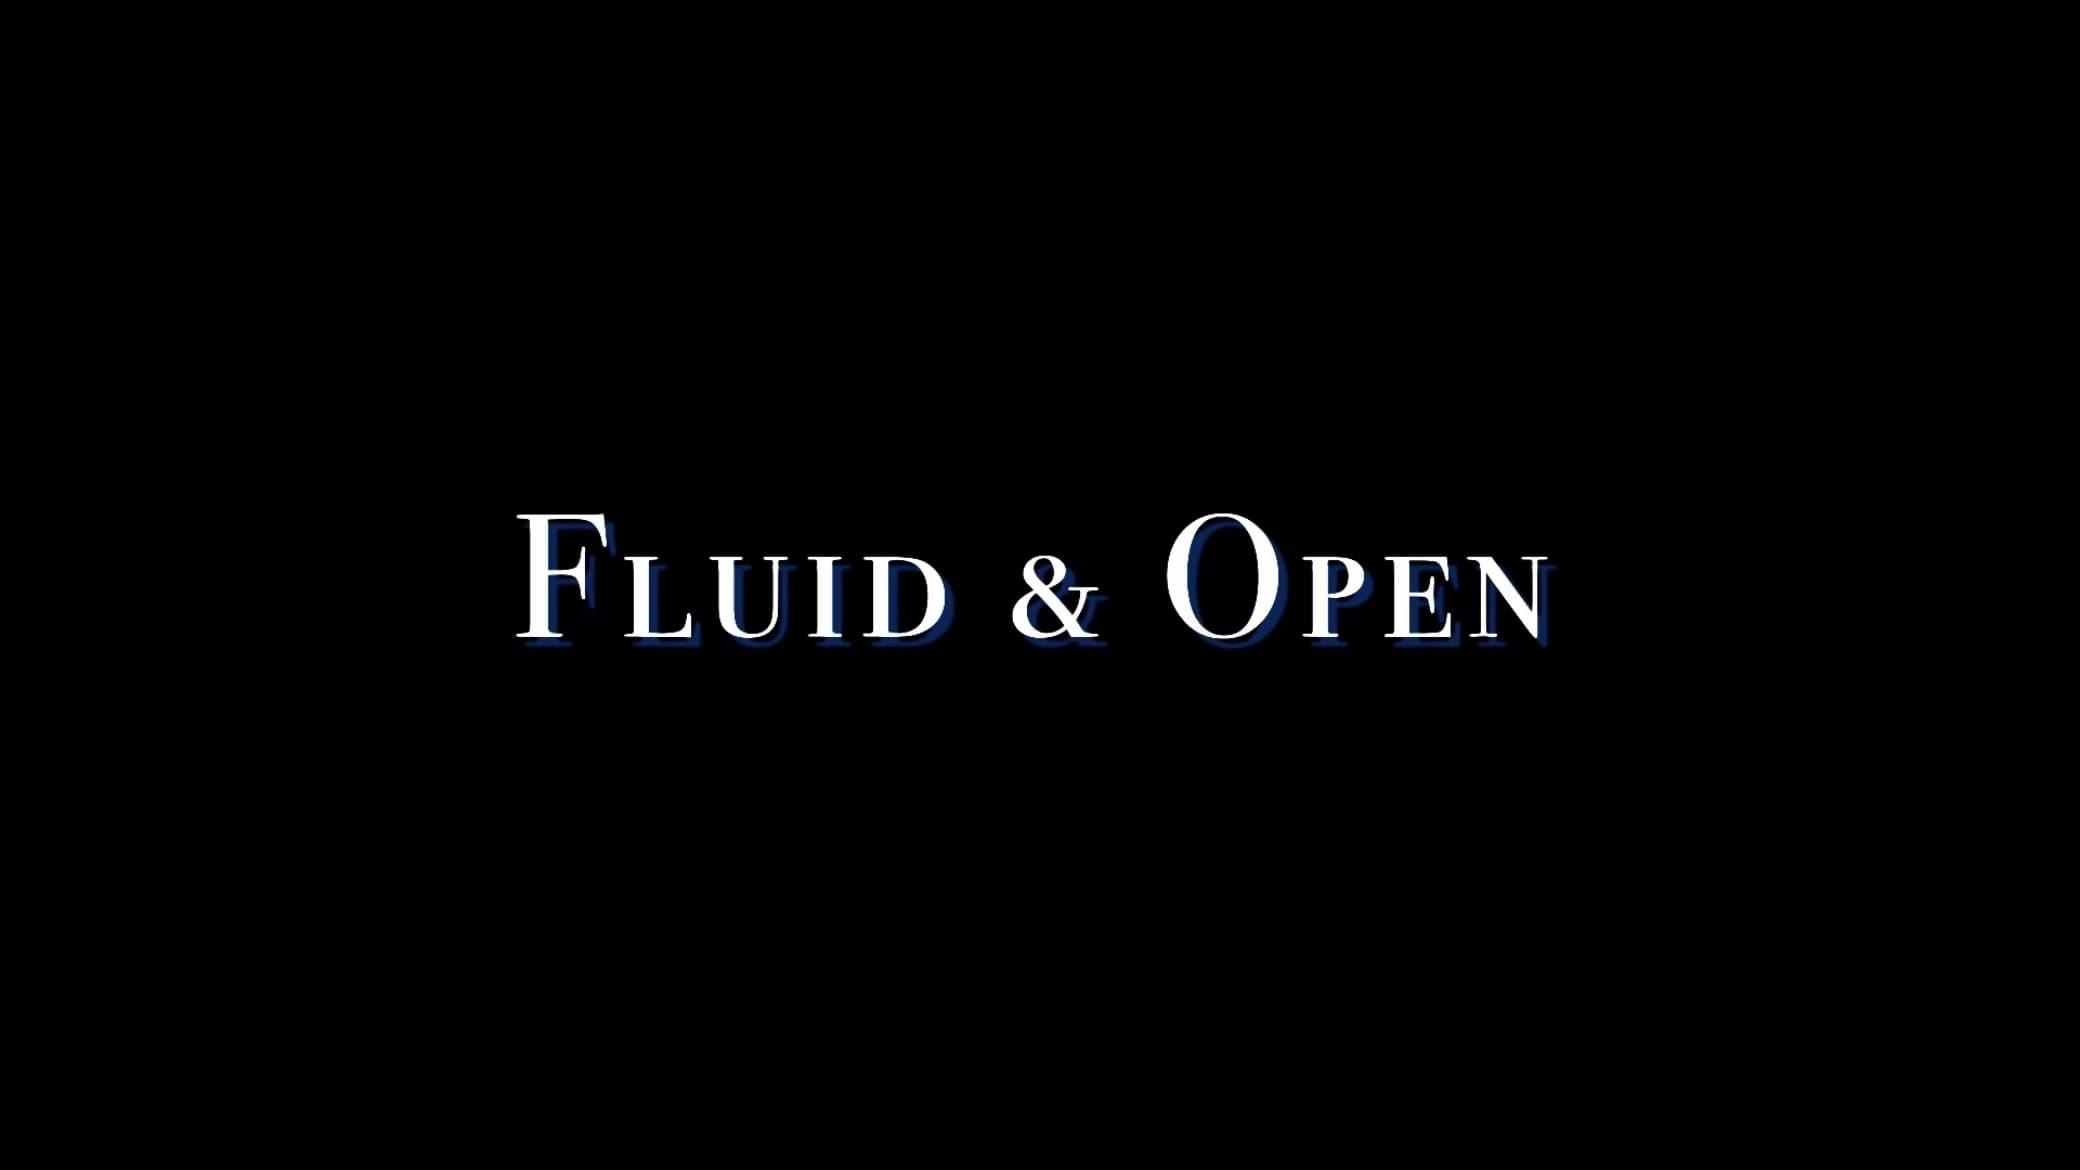 Fluid & Open backdrop